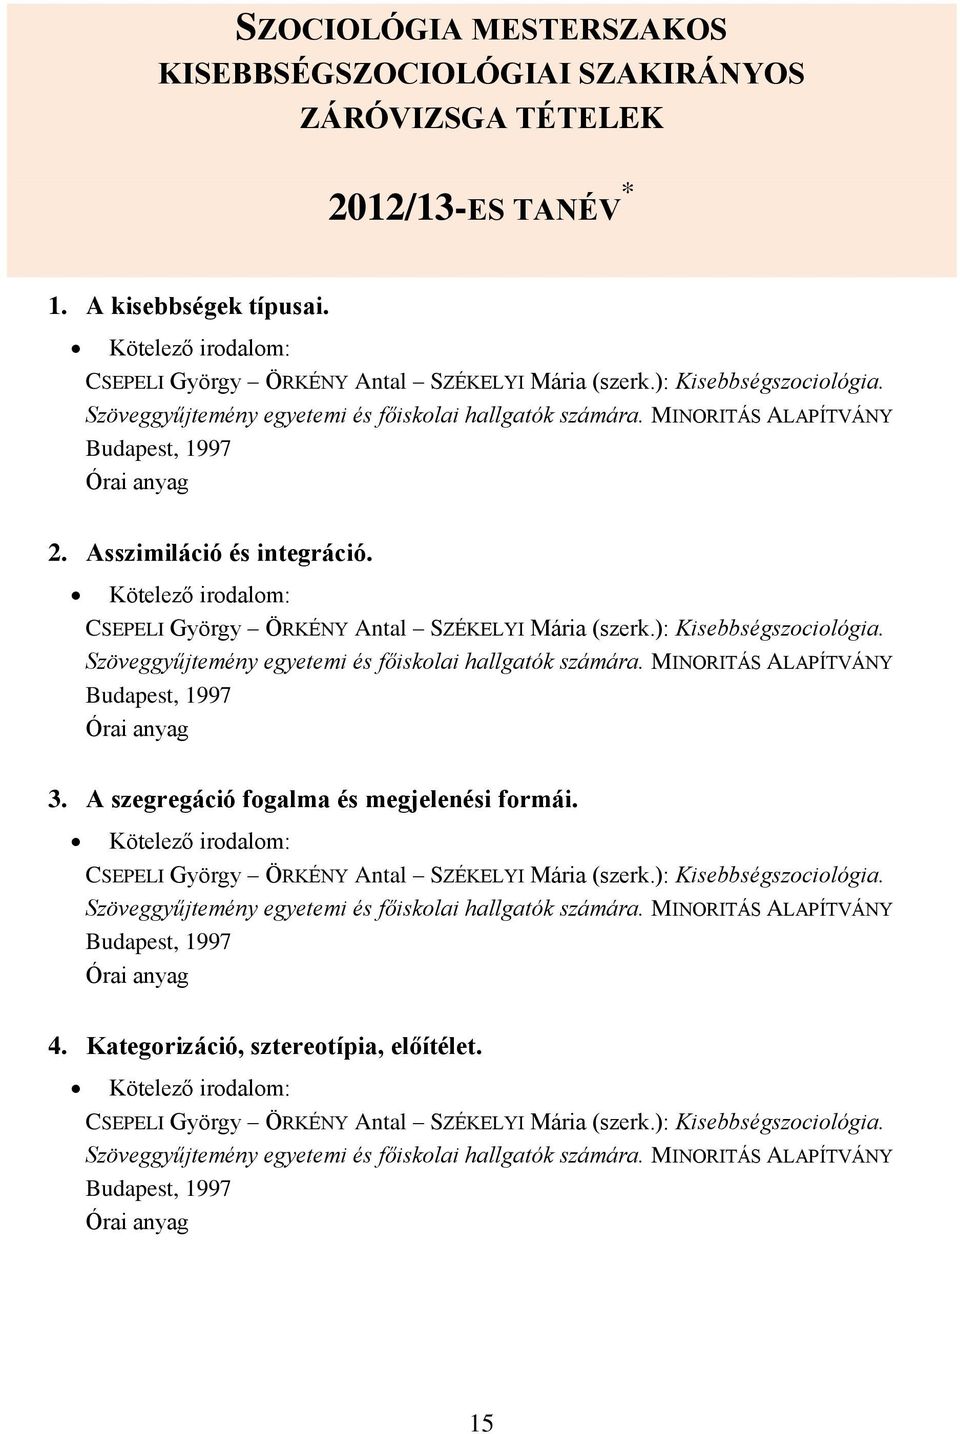 ZÁRÓVIZSGA TÉTELEK Szociológia mesterszakos hallgatók számára. 2013/14-es  tanév tavaszi záróvizsga - PDF Ingyenes letöltés